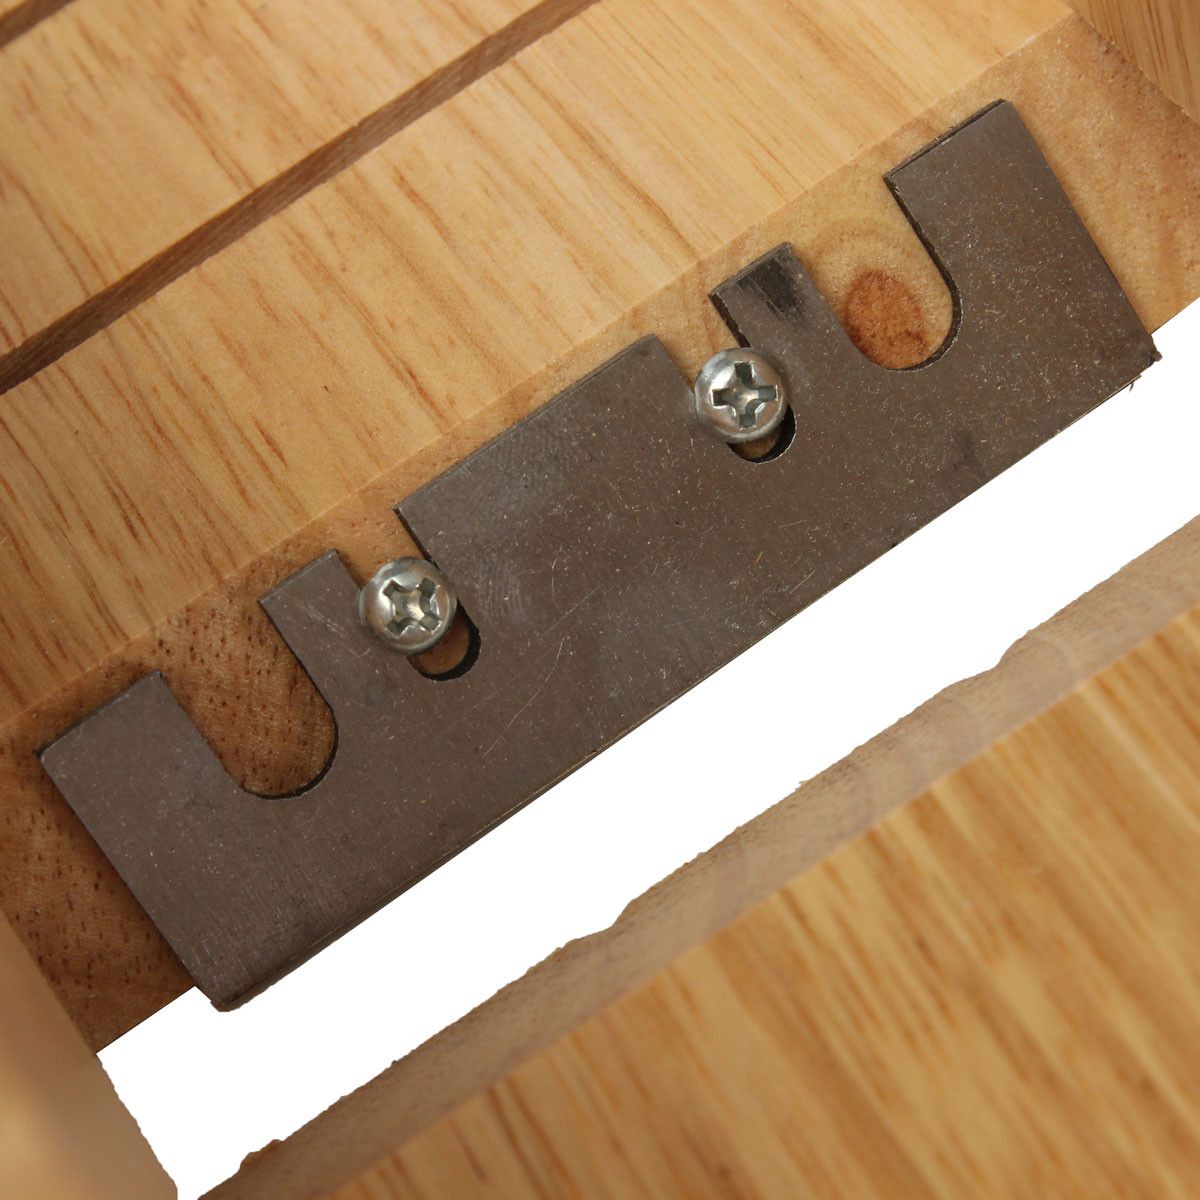 Soap-Mold-Loaf-Cutter-Adjustable-Wood-and-Beveler-Planer-Cutting-1039889